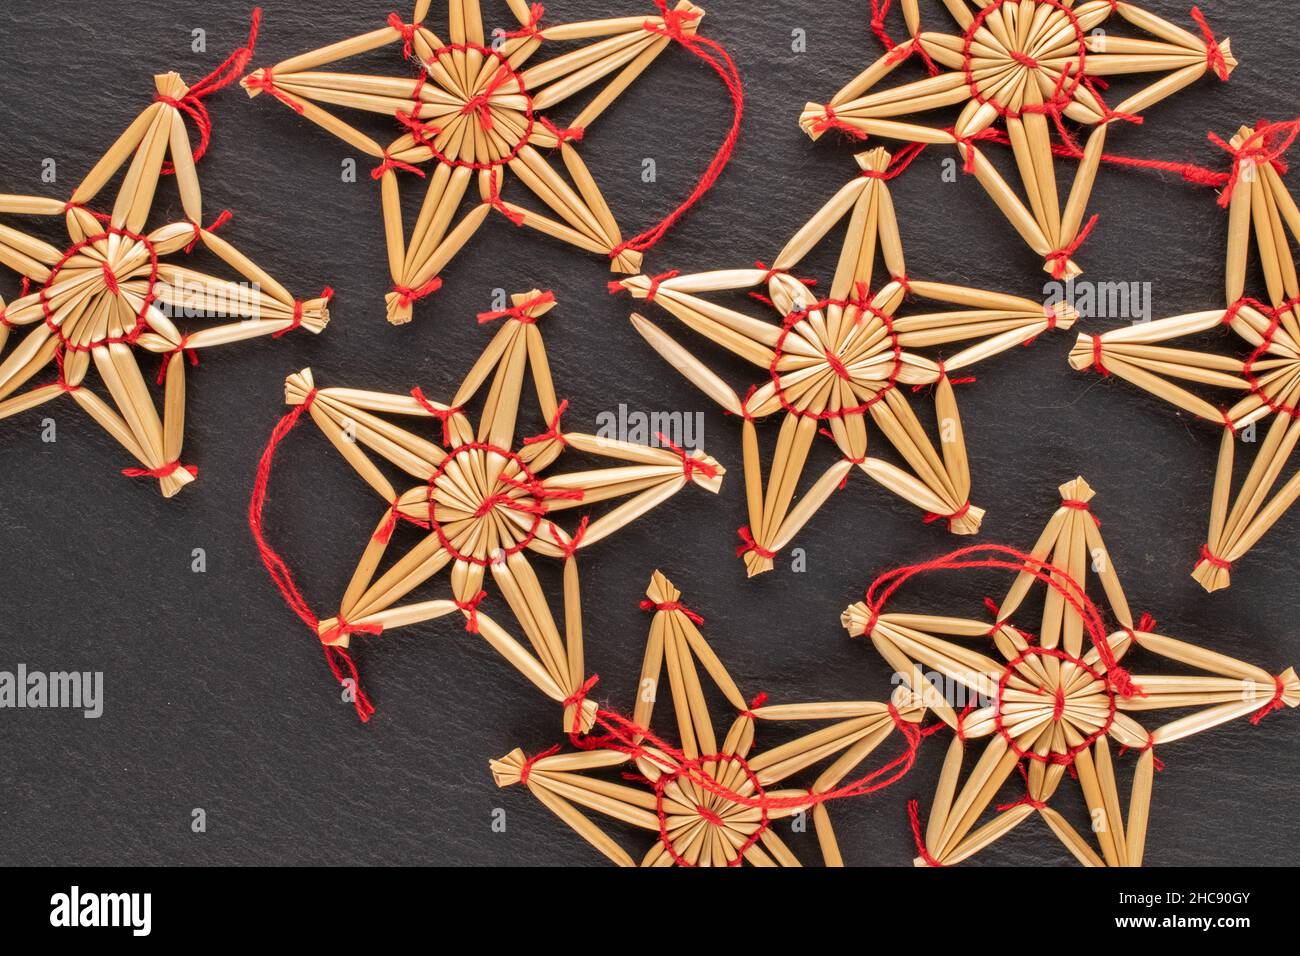 Plusieurs jouets de Noël en paille en forme d'étoile sur une pierre d'ardoise, vue rapprochée, vue de dessus. Banque D'Images